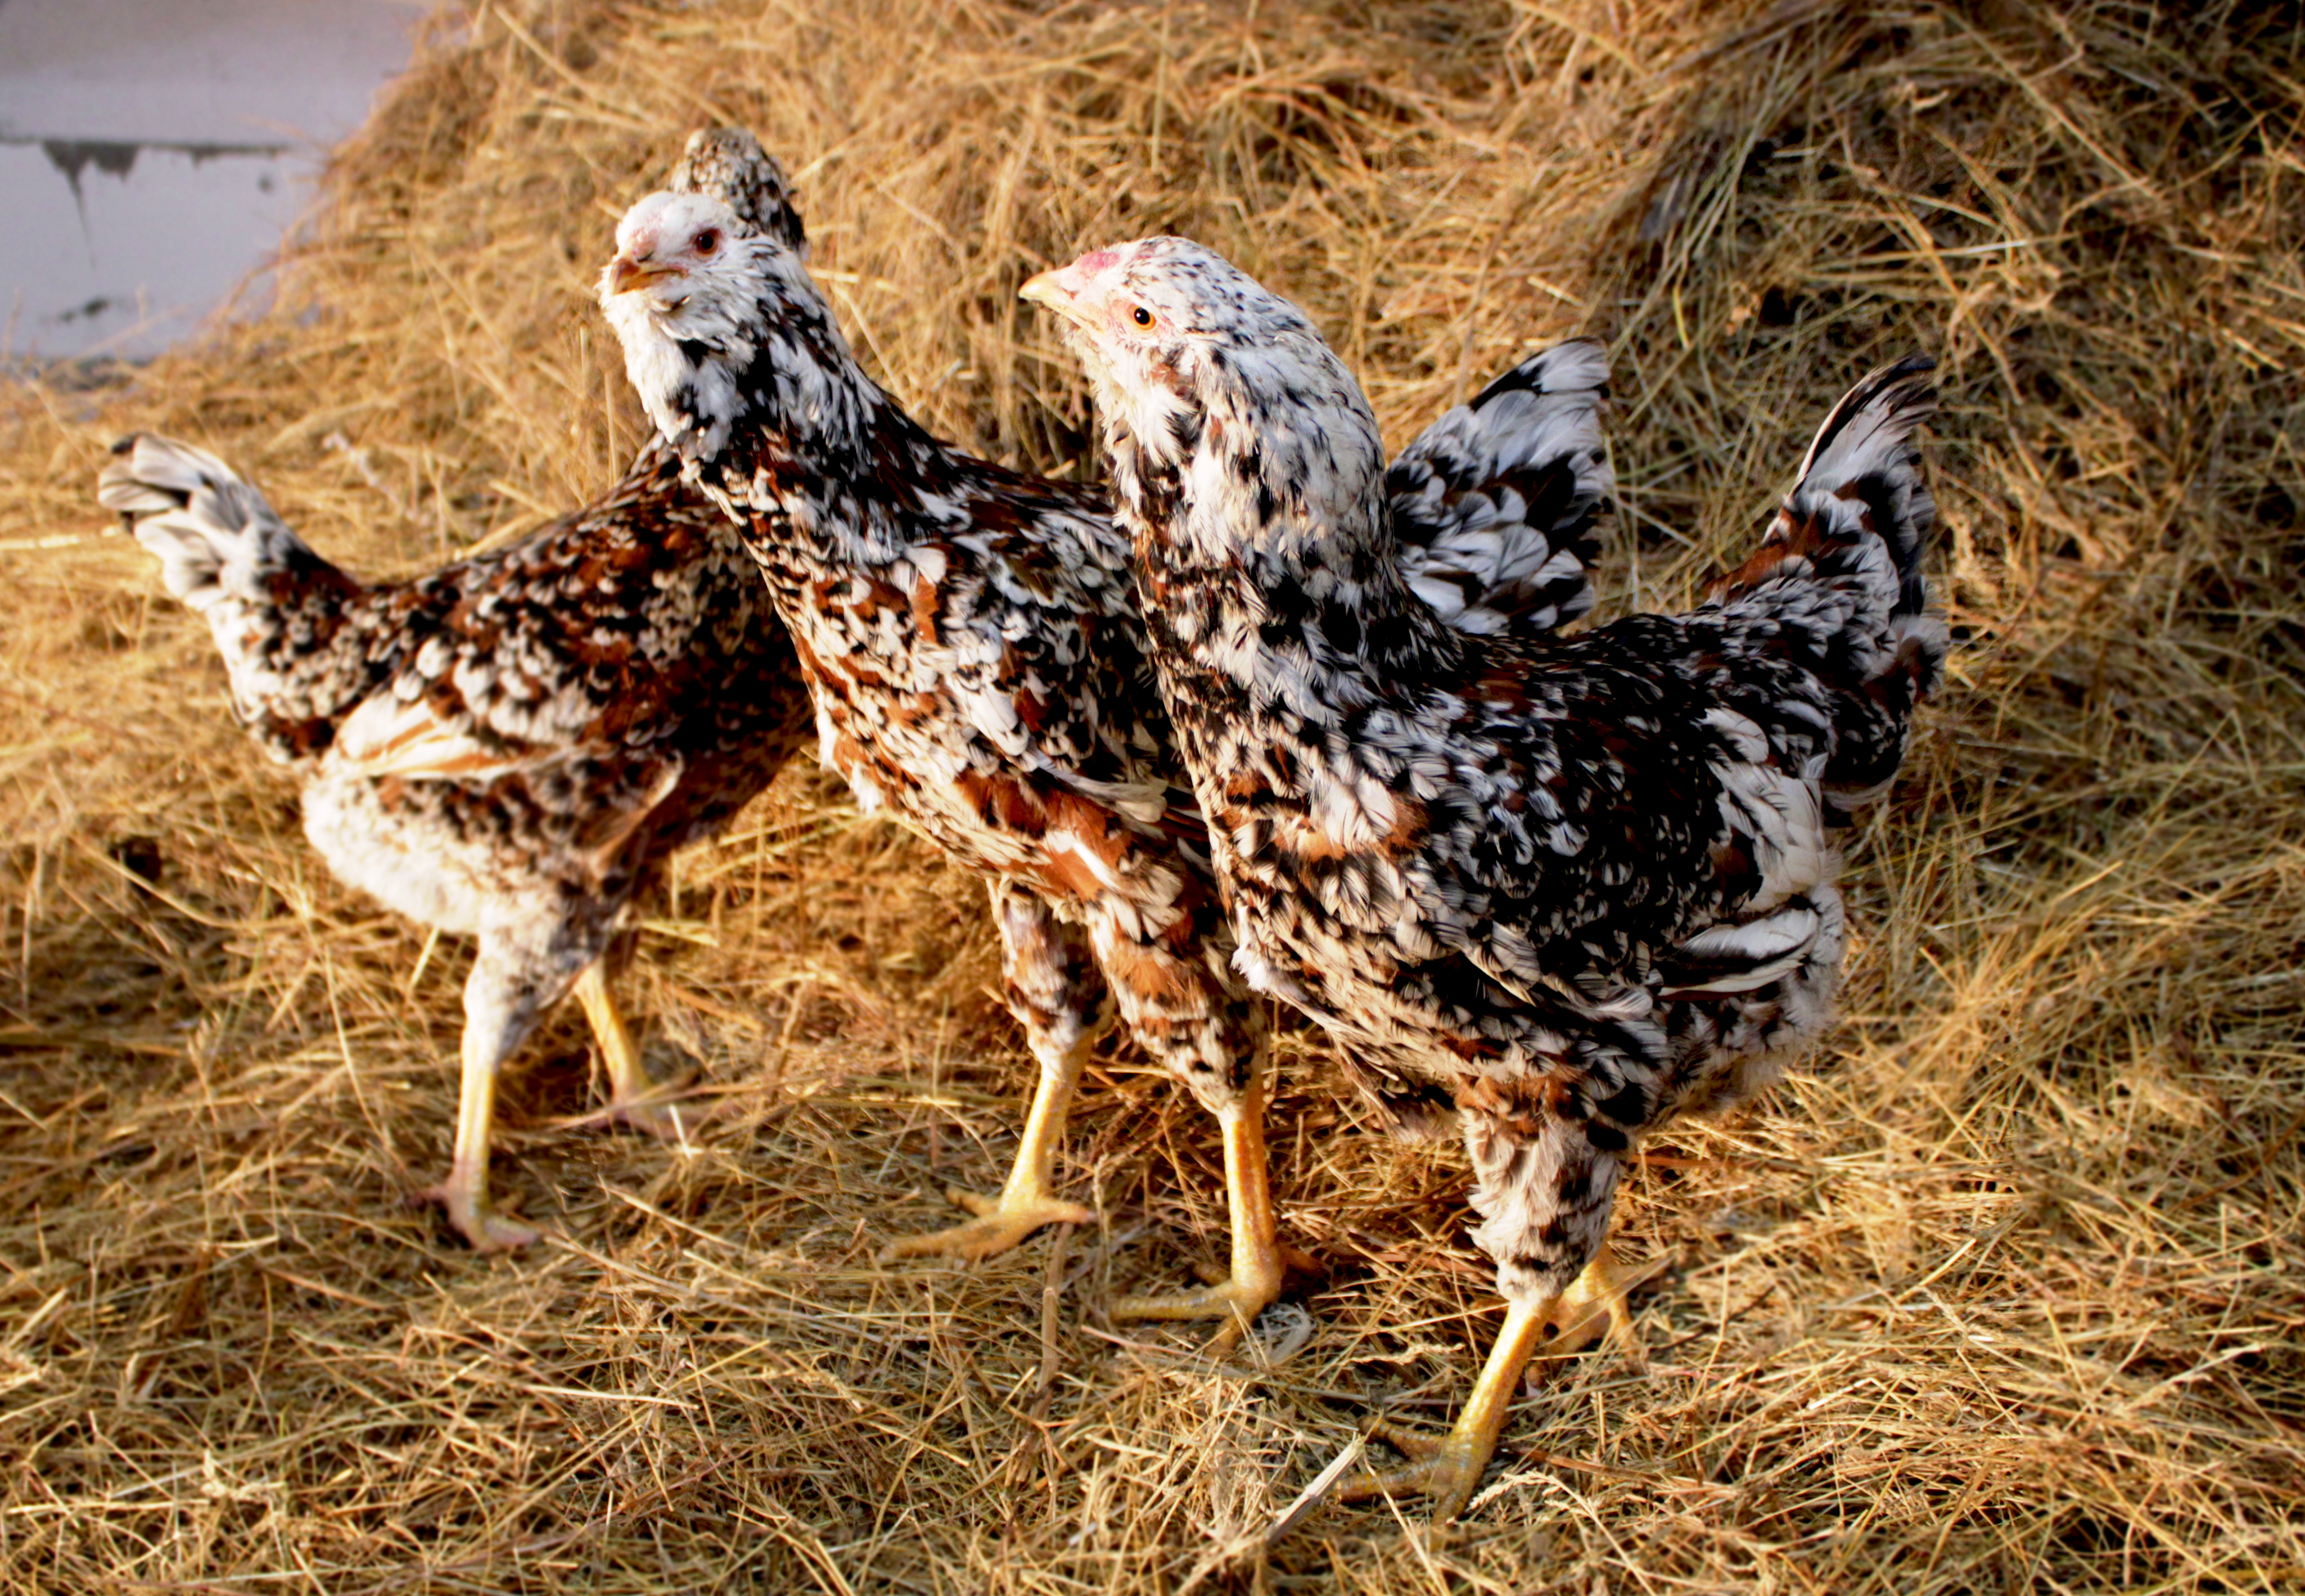 Орловская порода кур — описание, фото и характеристики